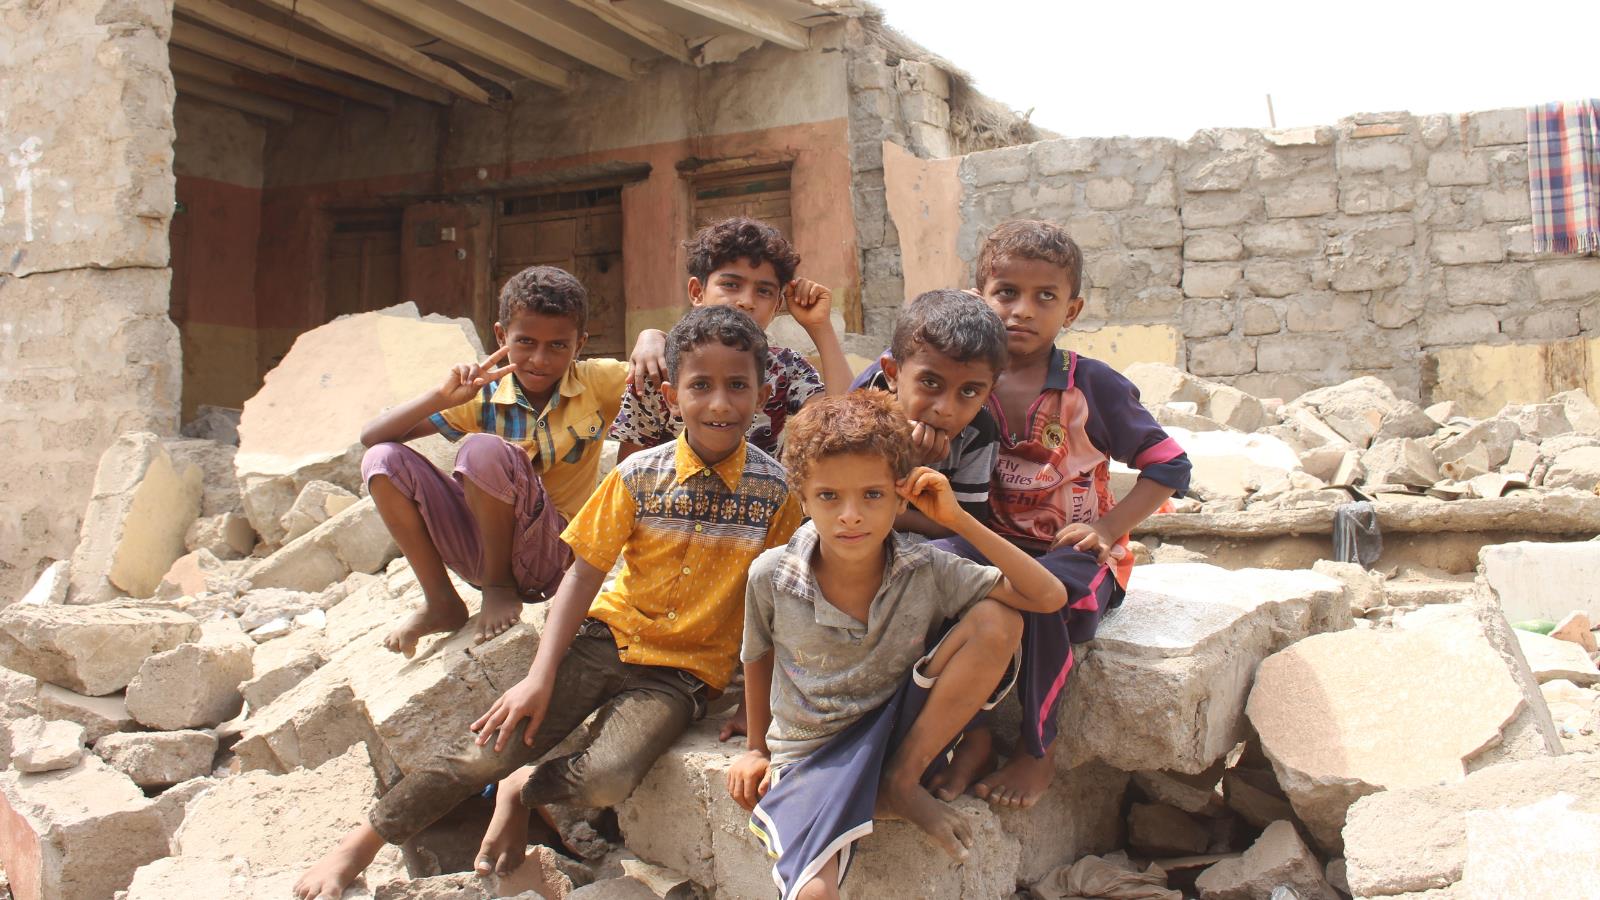 أطفال يمنيون يقفون على ركام منزل دمرته الحرب في الساحل الغربي لليمن(الجزيرة نت)